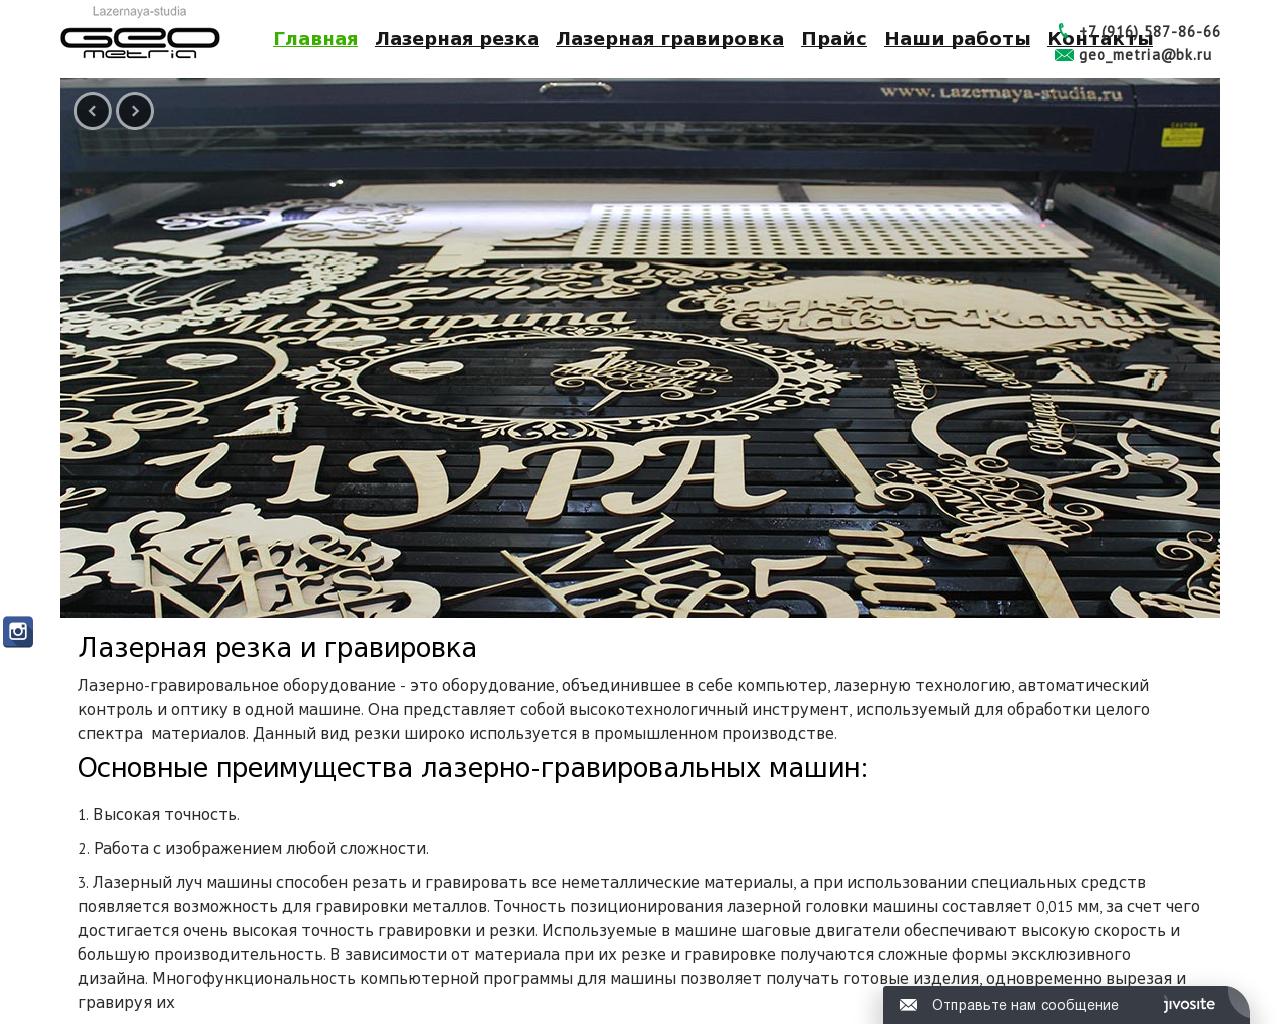 Изображение сайта lazernaya-studia.ru в разрешении 1280x1024